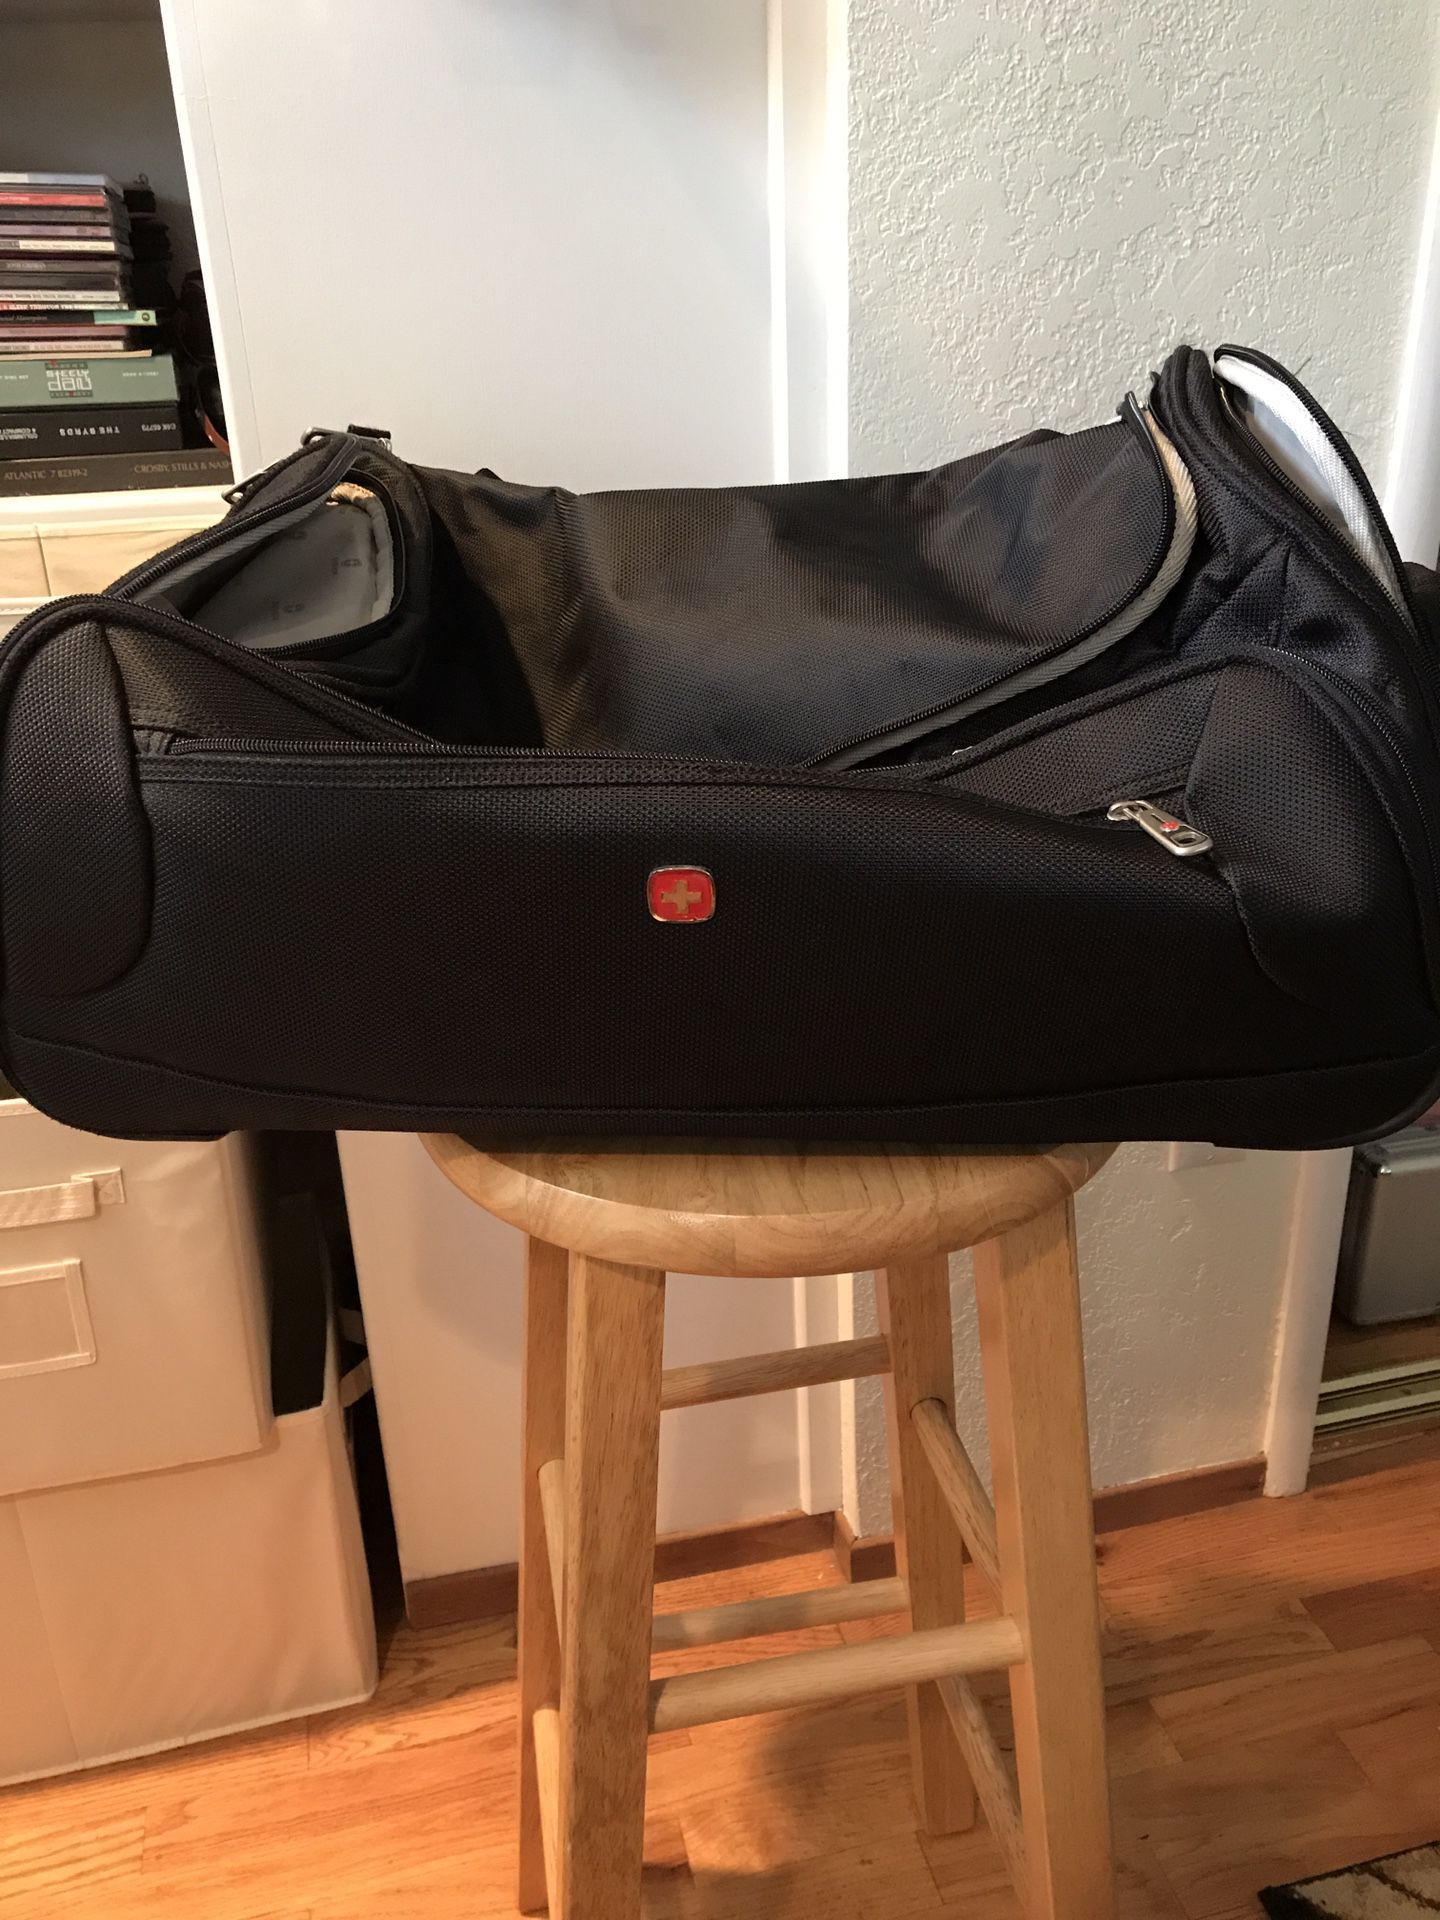 Swissgear Duffelbag/Luggage